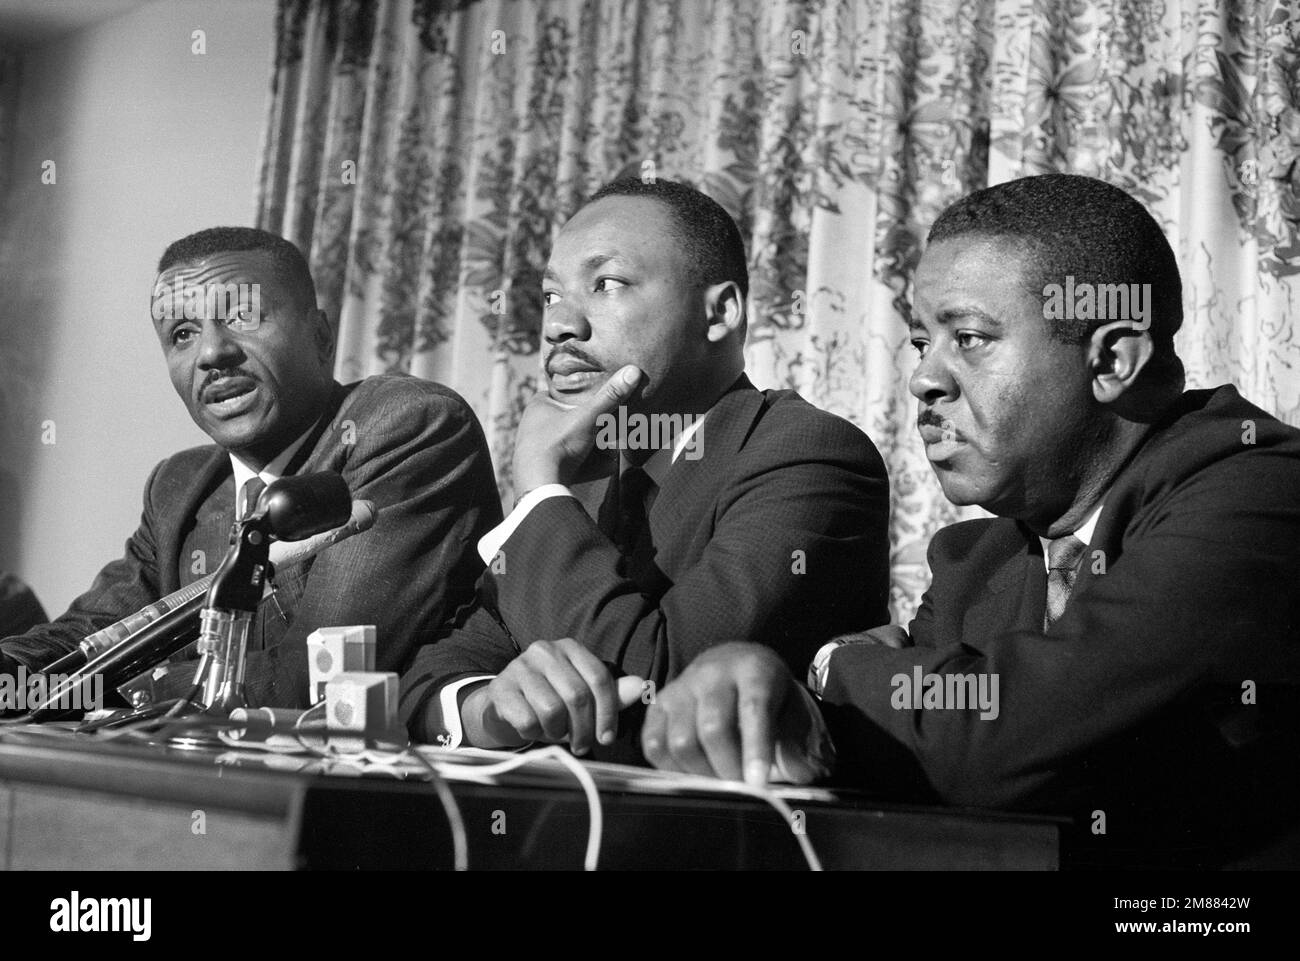 Les leaders des droits civils (de gauche à droite) Fred Shuttlesworth, Martin Luther King et Ralph Abernathy lors de la conférence de presse lors de la campagne de Birmingham, Birmingham, Alabama, Etats-Unis, Marion S. Trikosko, COLLECTION US News & World Report Magazine, 16 mai 1963 Banque D'Images